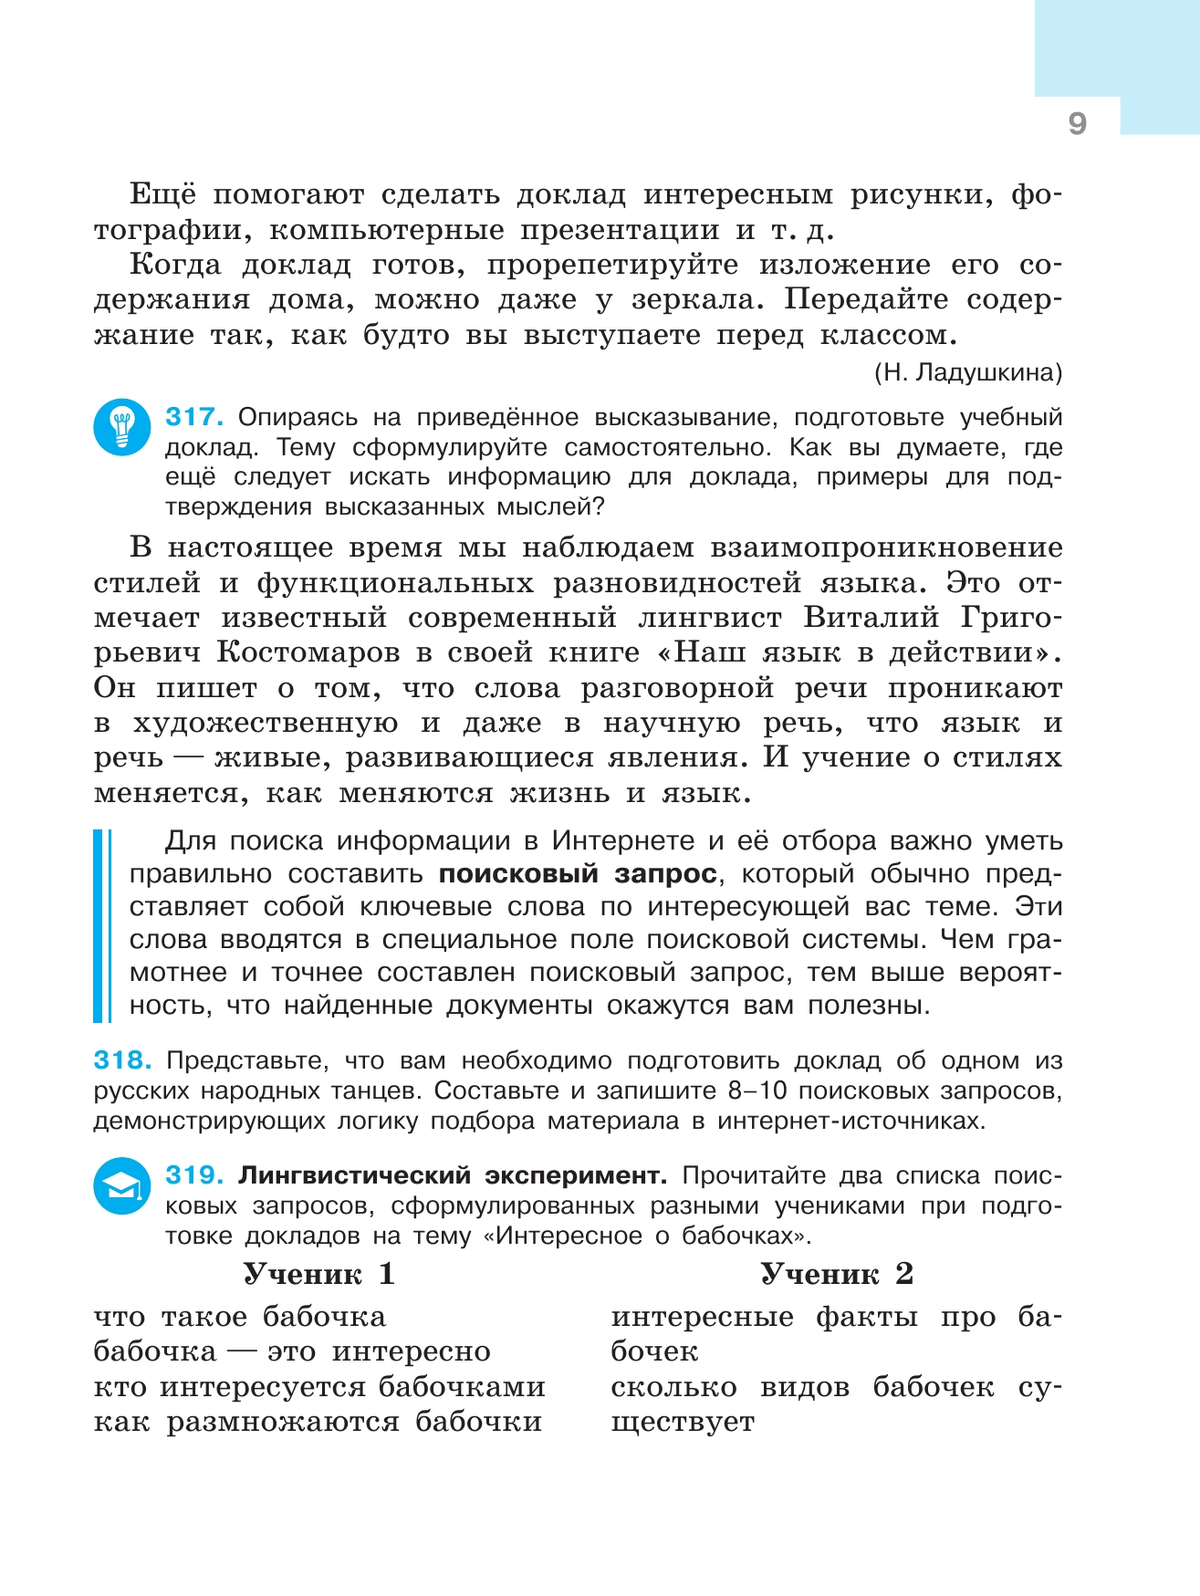 Русский язык. 7 класс. Учебник. В 2 ч. Часть 2 5